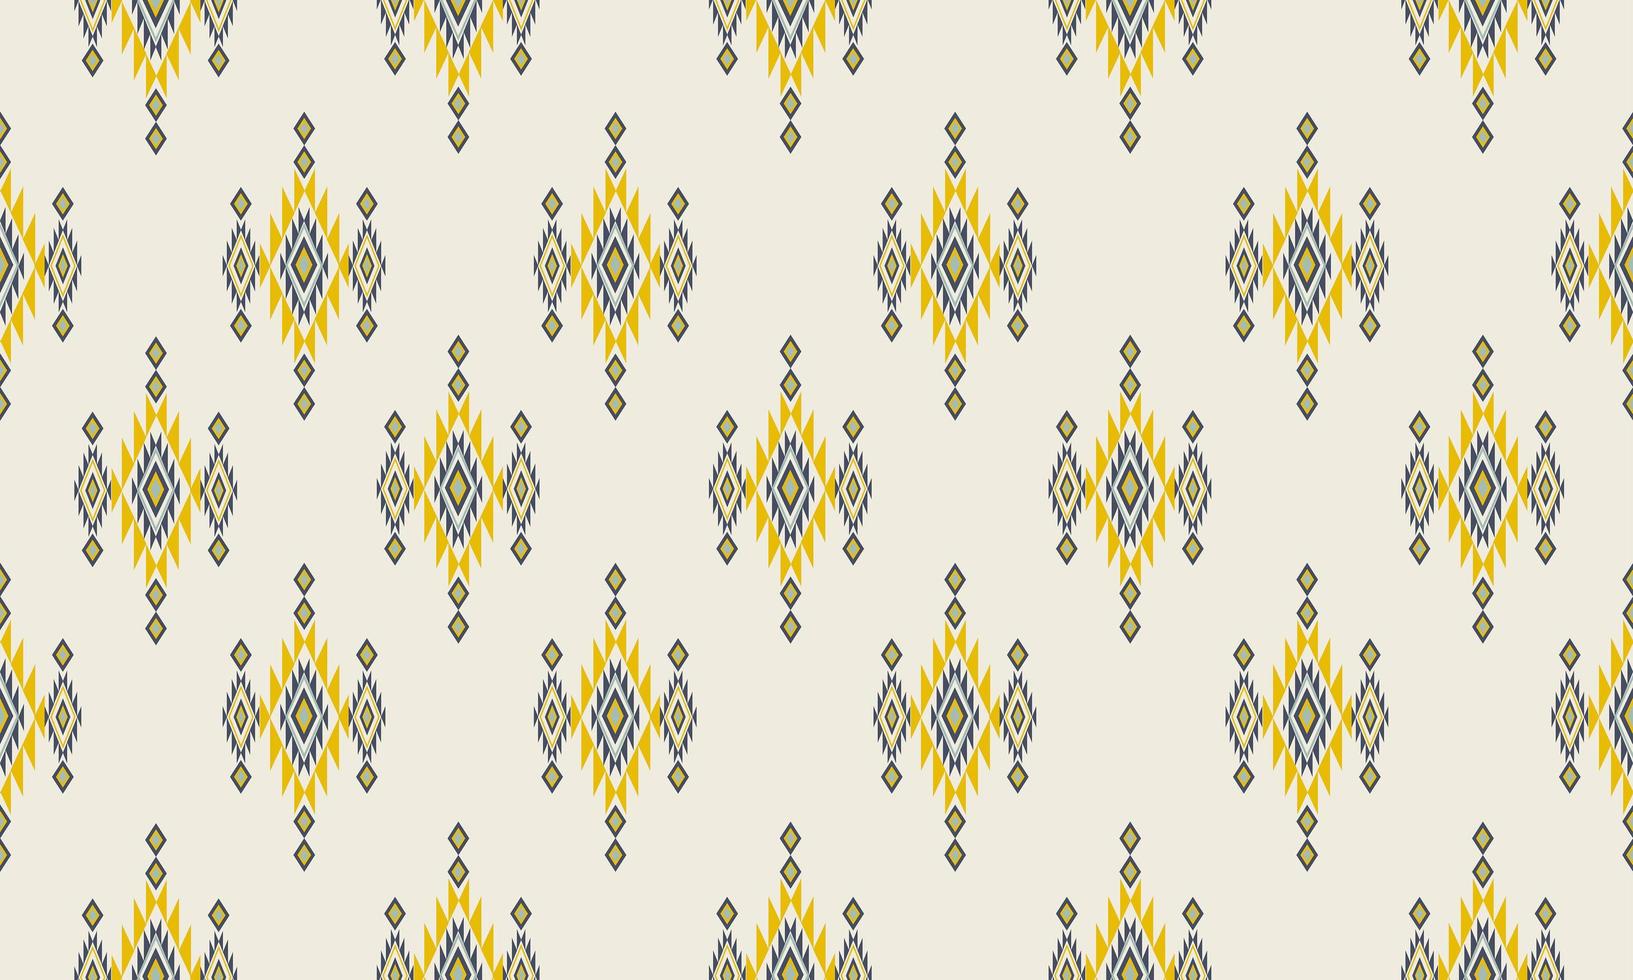 geometrische etnische patroon oosters. naadloos patroon. ontwerp voor stof, gordijn, achtergrond, tapijt, behang, kleding, inwikkeling, batik, stof, vectorillustratie. patroon hok vector